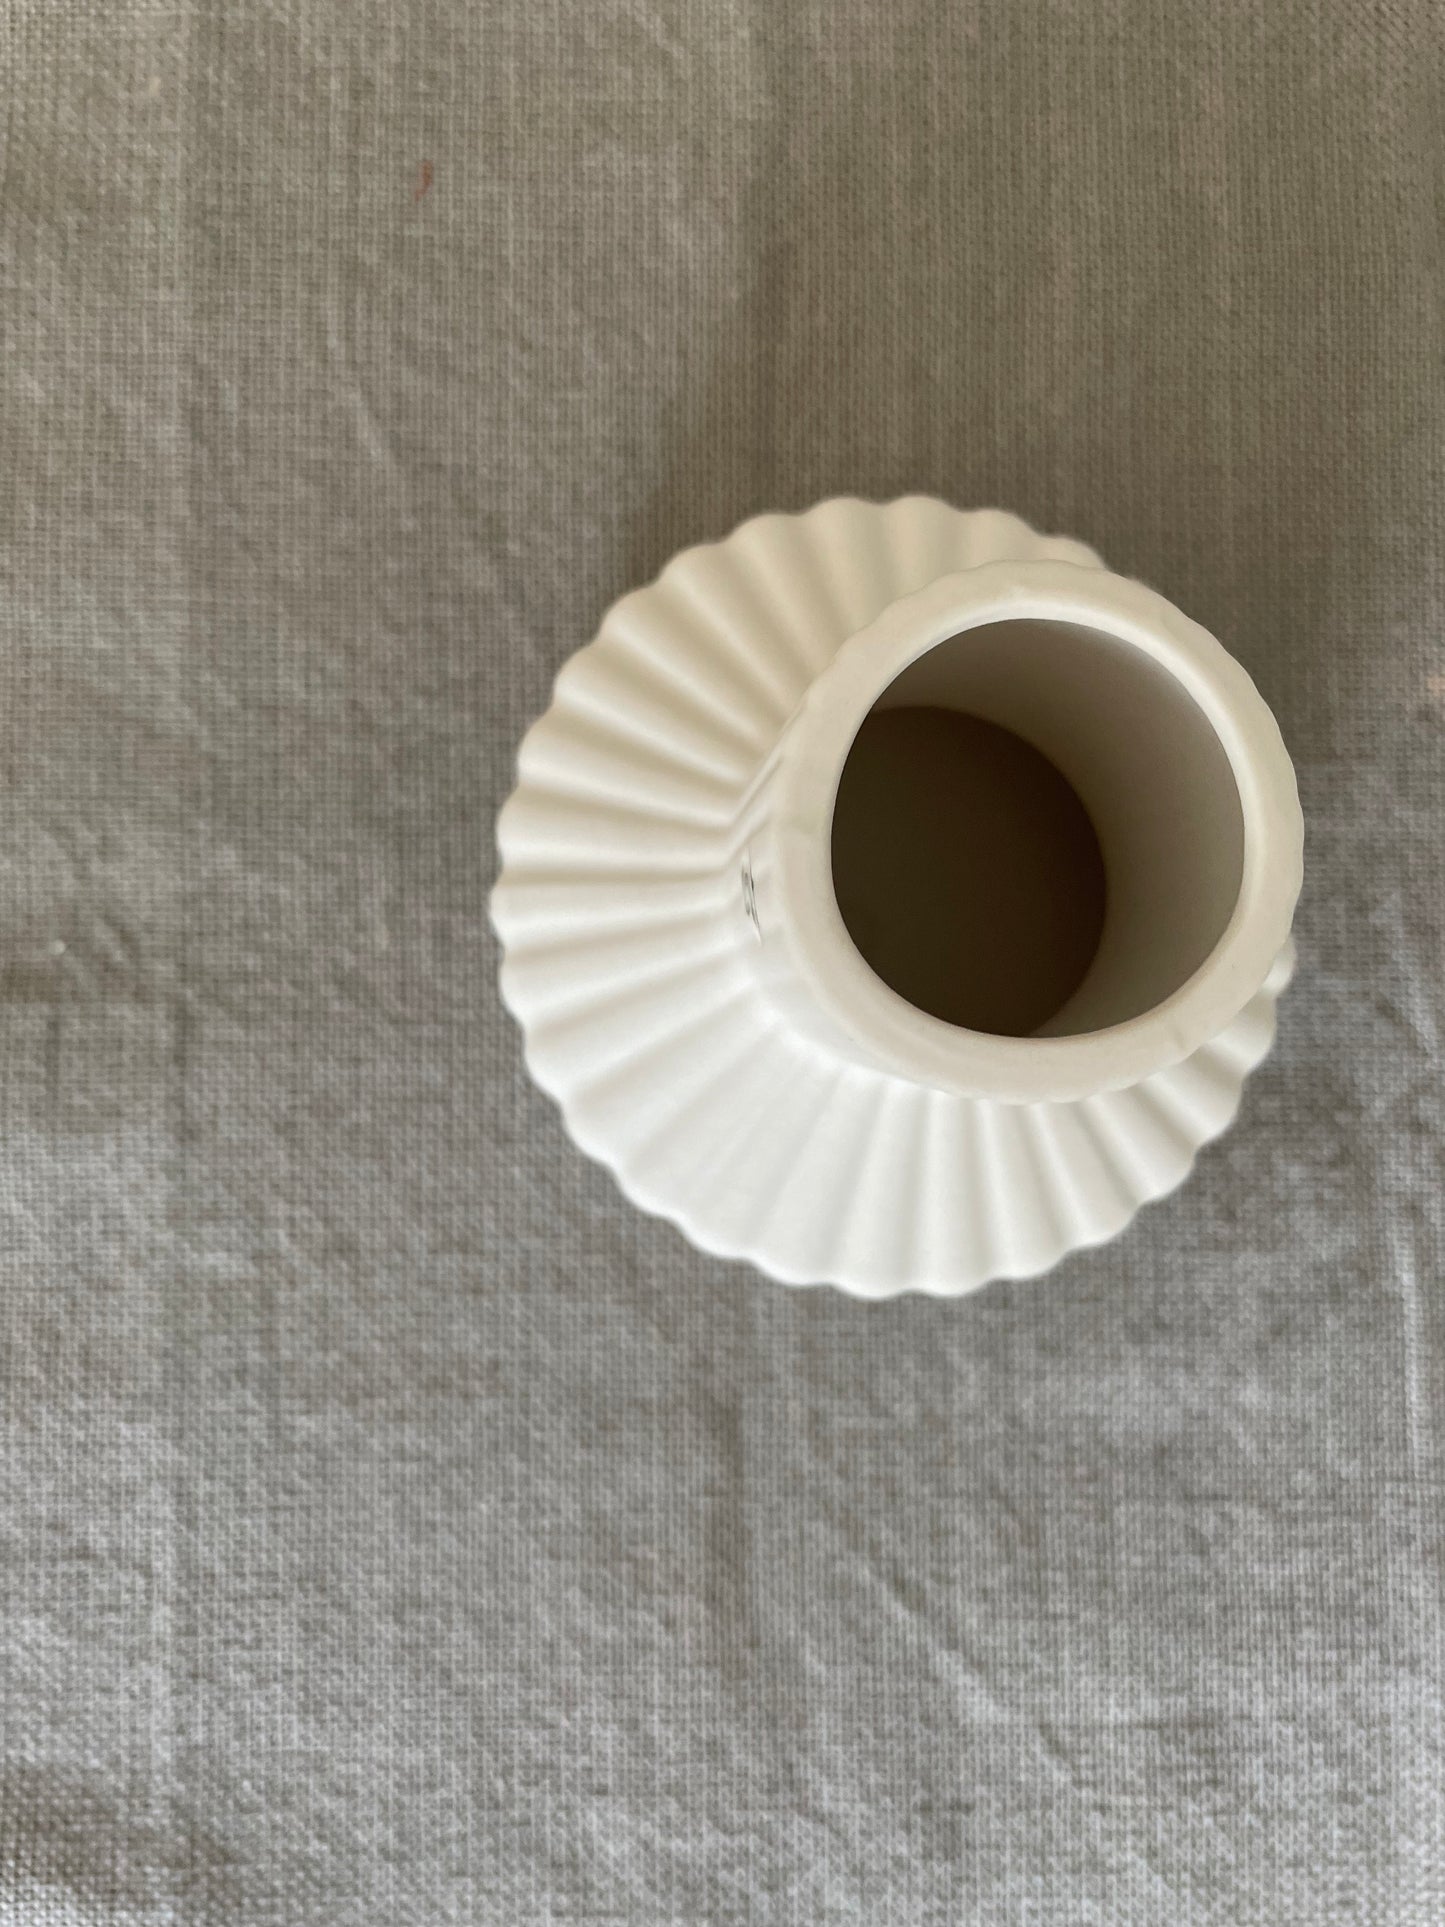 Storefactory Vase Samset  -white